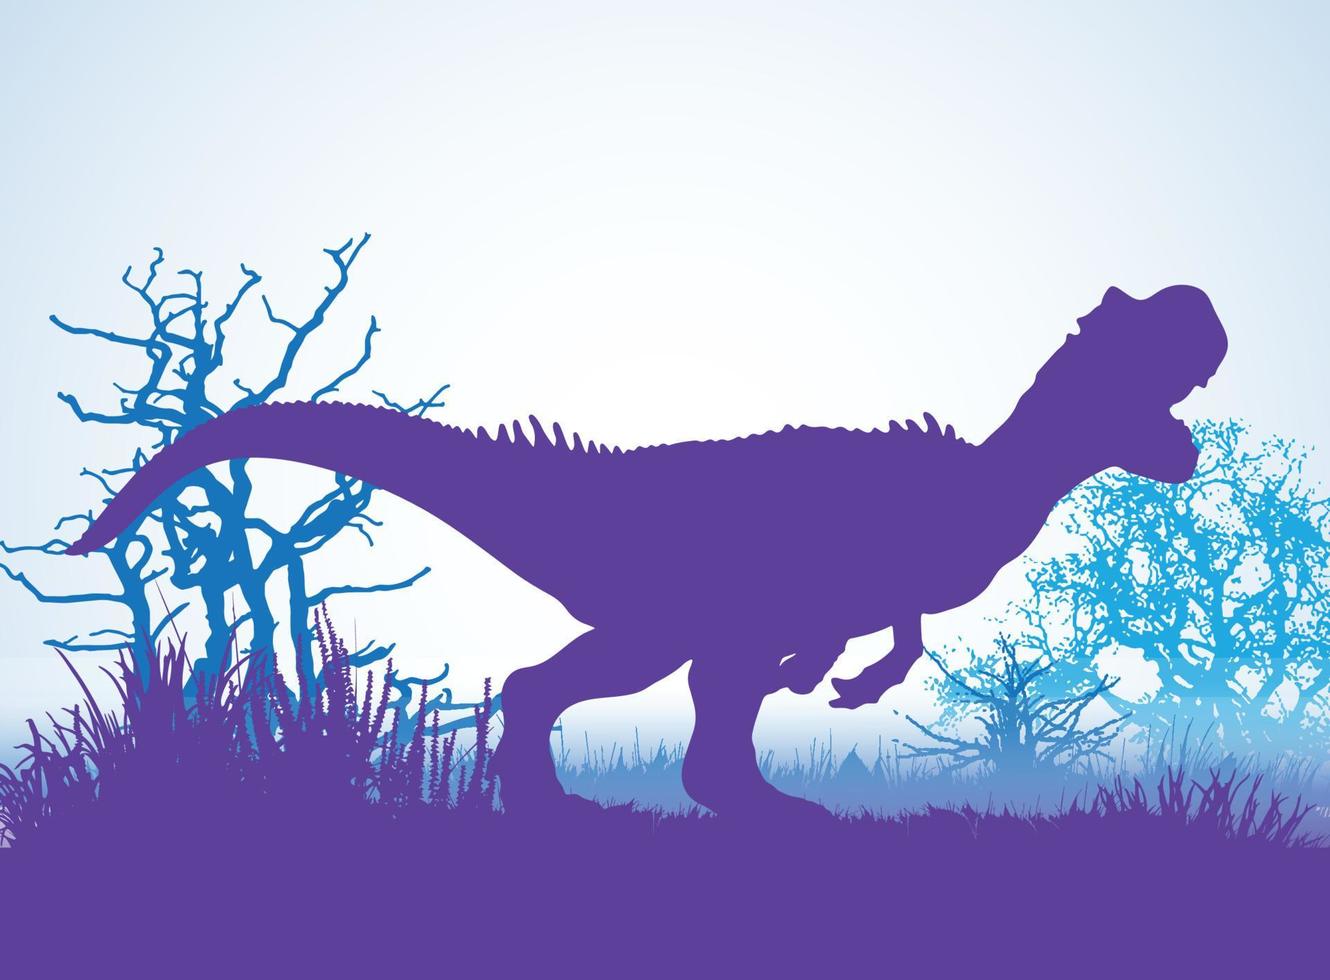 allosaurus, sagome di dinosauri in ambiente preistorico strati sovrapposti sfondo decorativo banner astratto illustrazione vettoriale